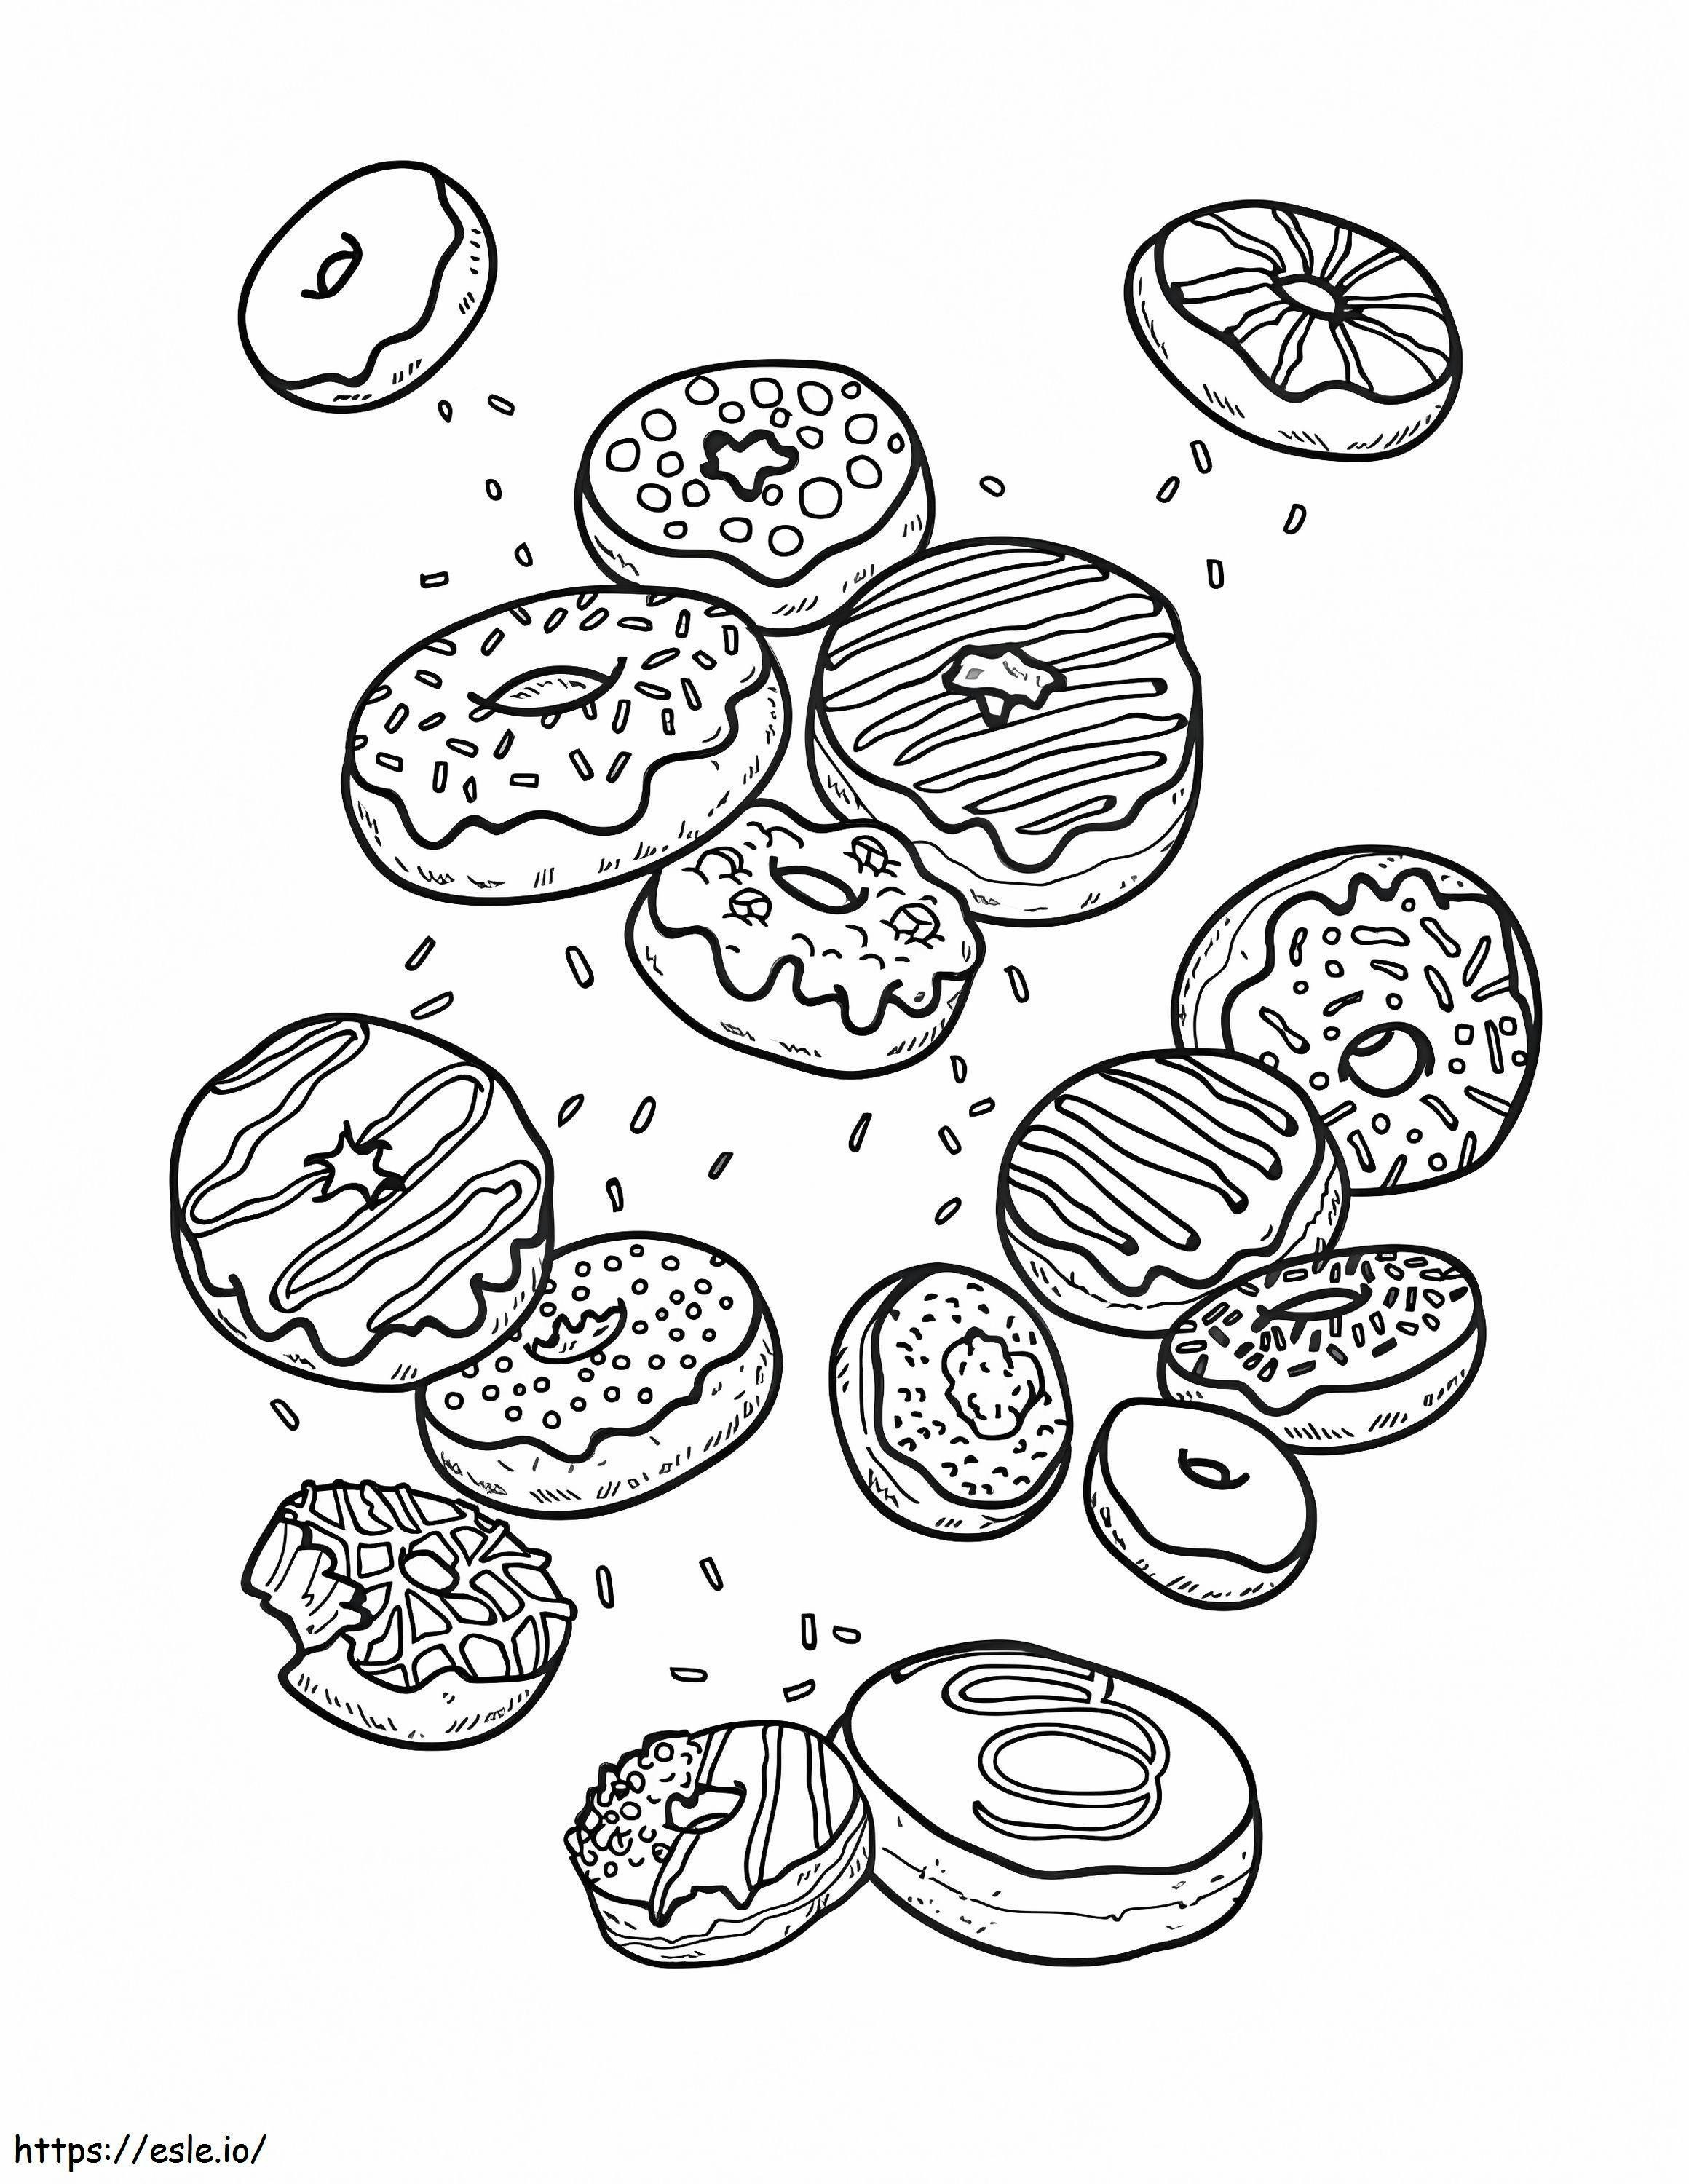 Viele Donuts ausmalbilder